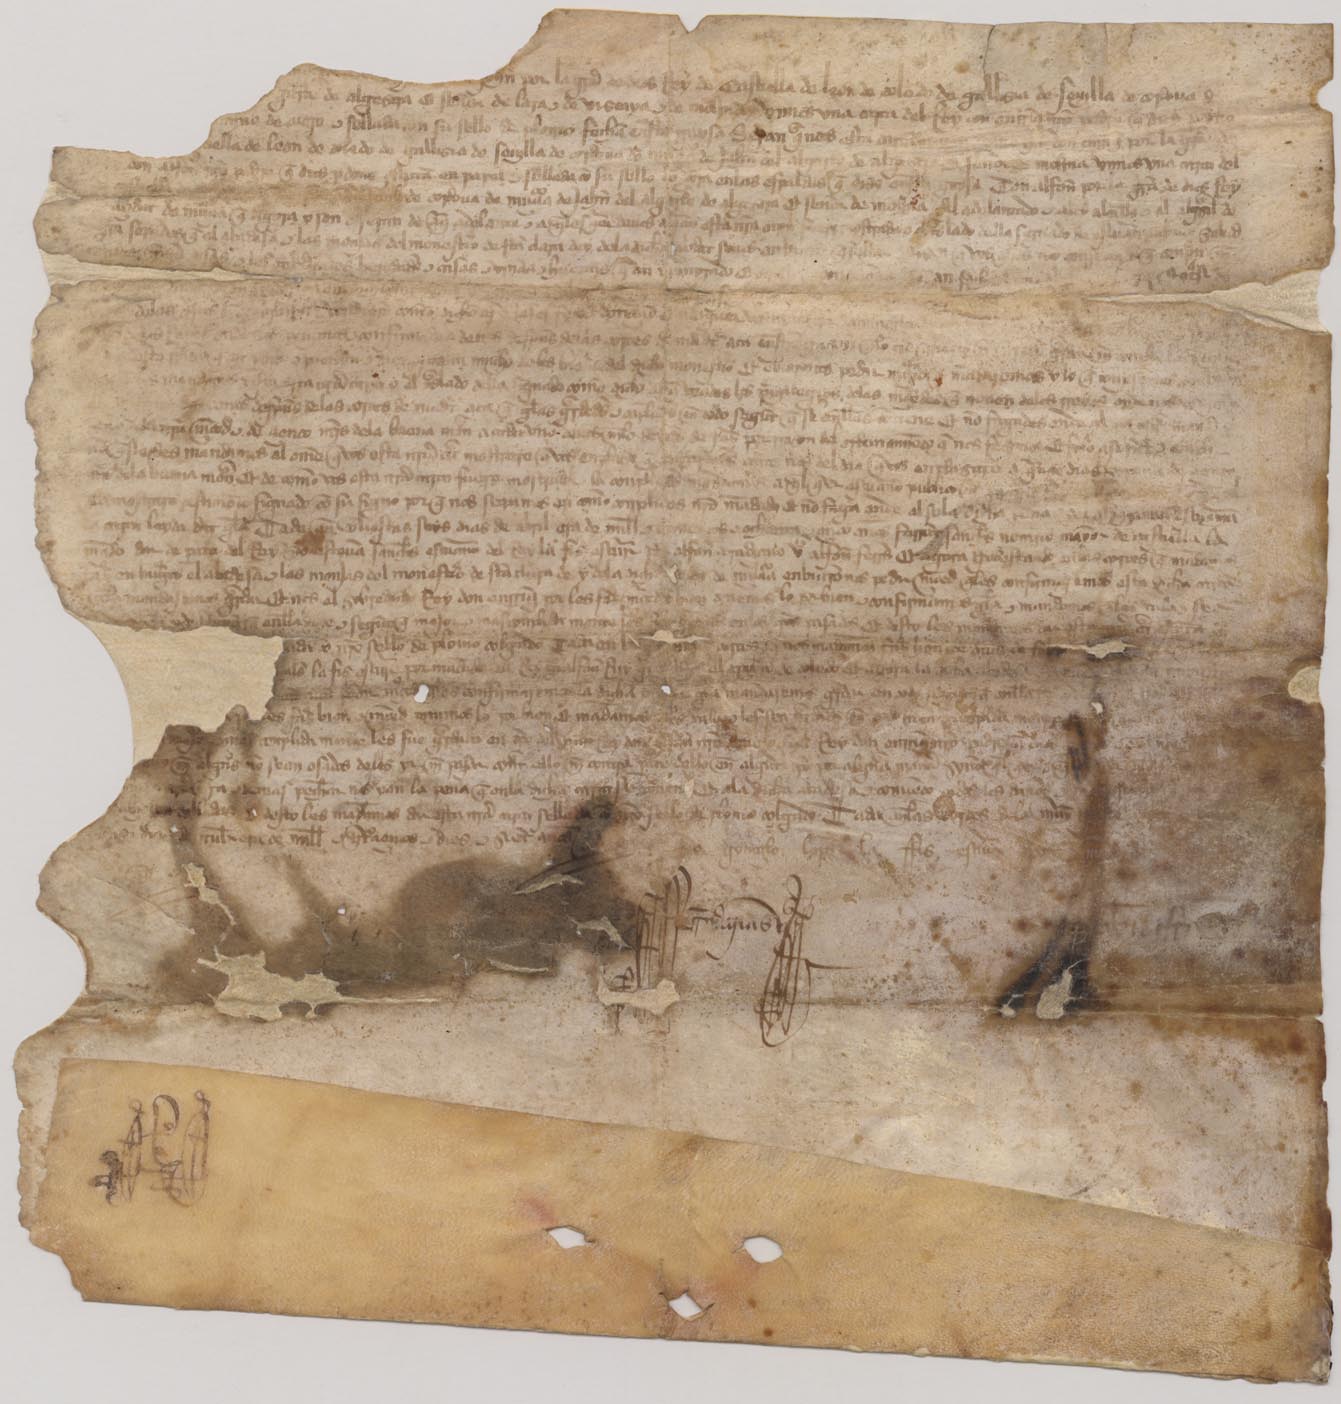 Carta de confirmación de Juan I de anteriores privilegios reales de compras y donaciones que tenía el Monasterio de Santa Clara.